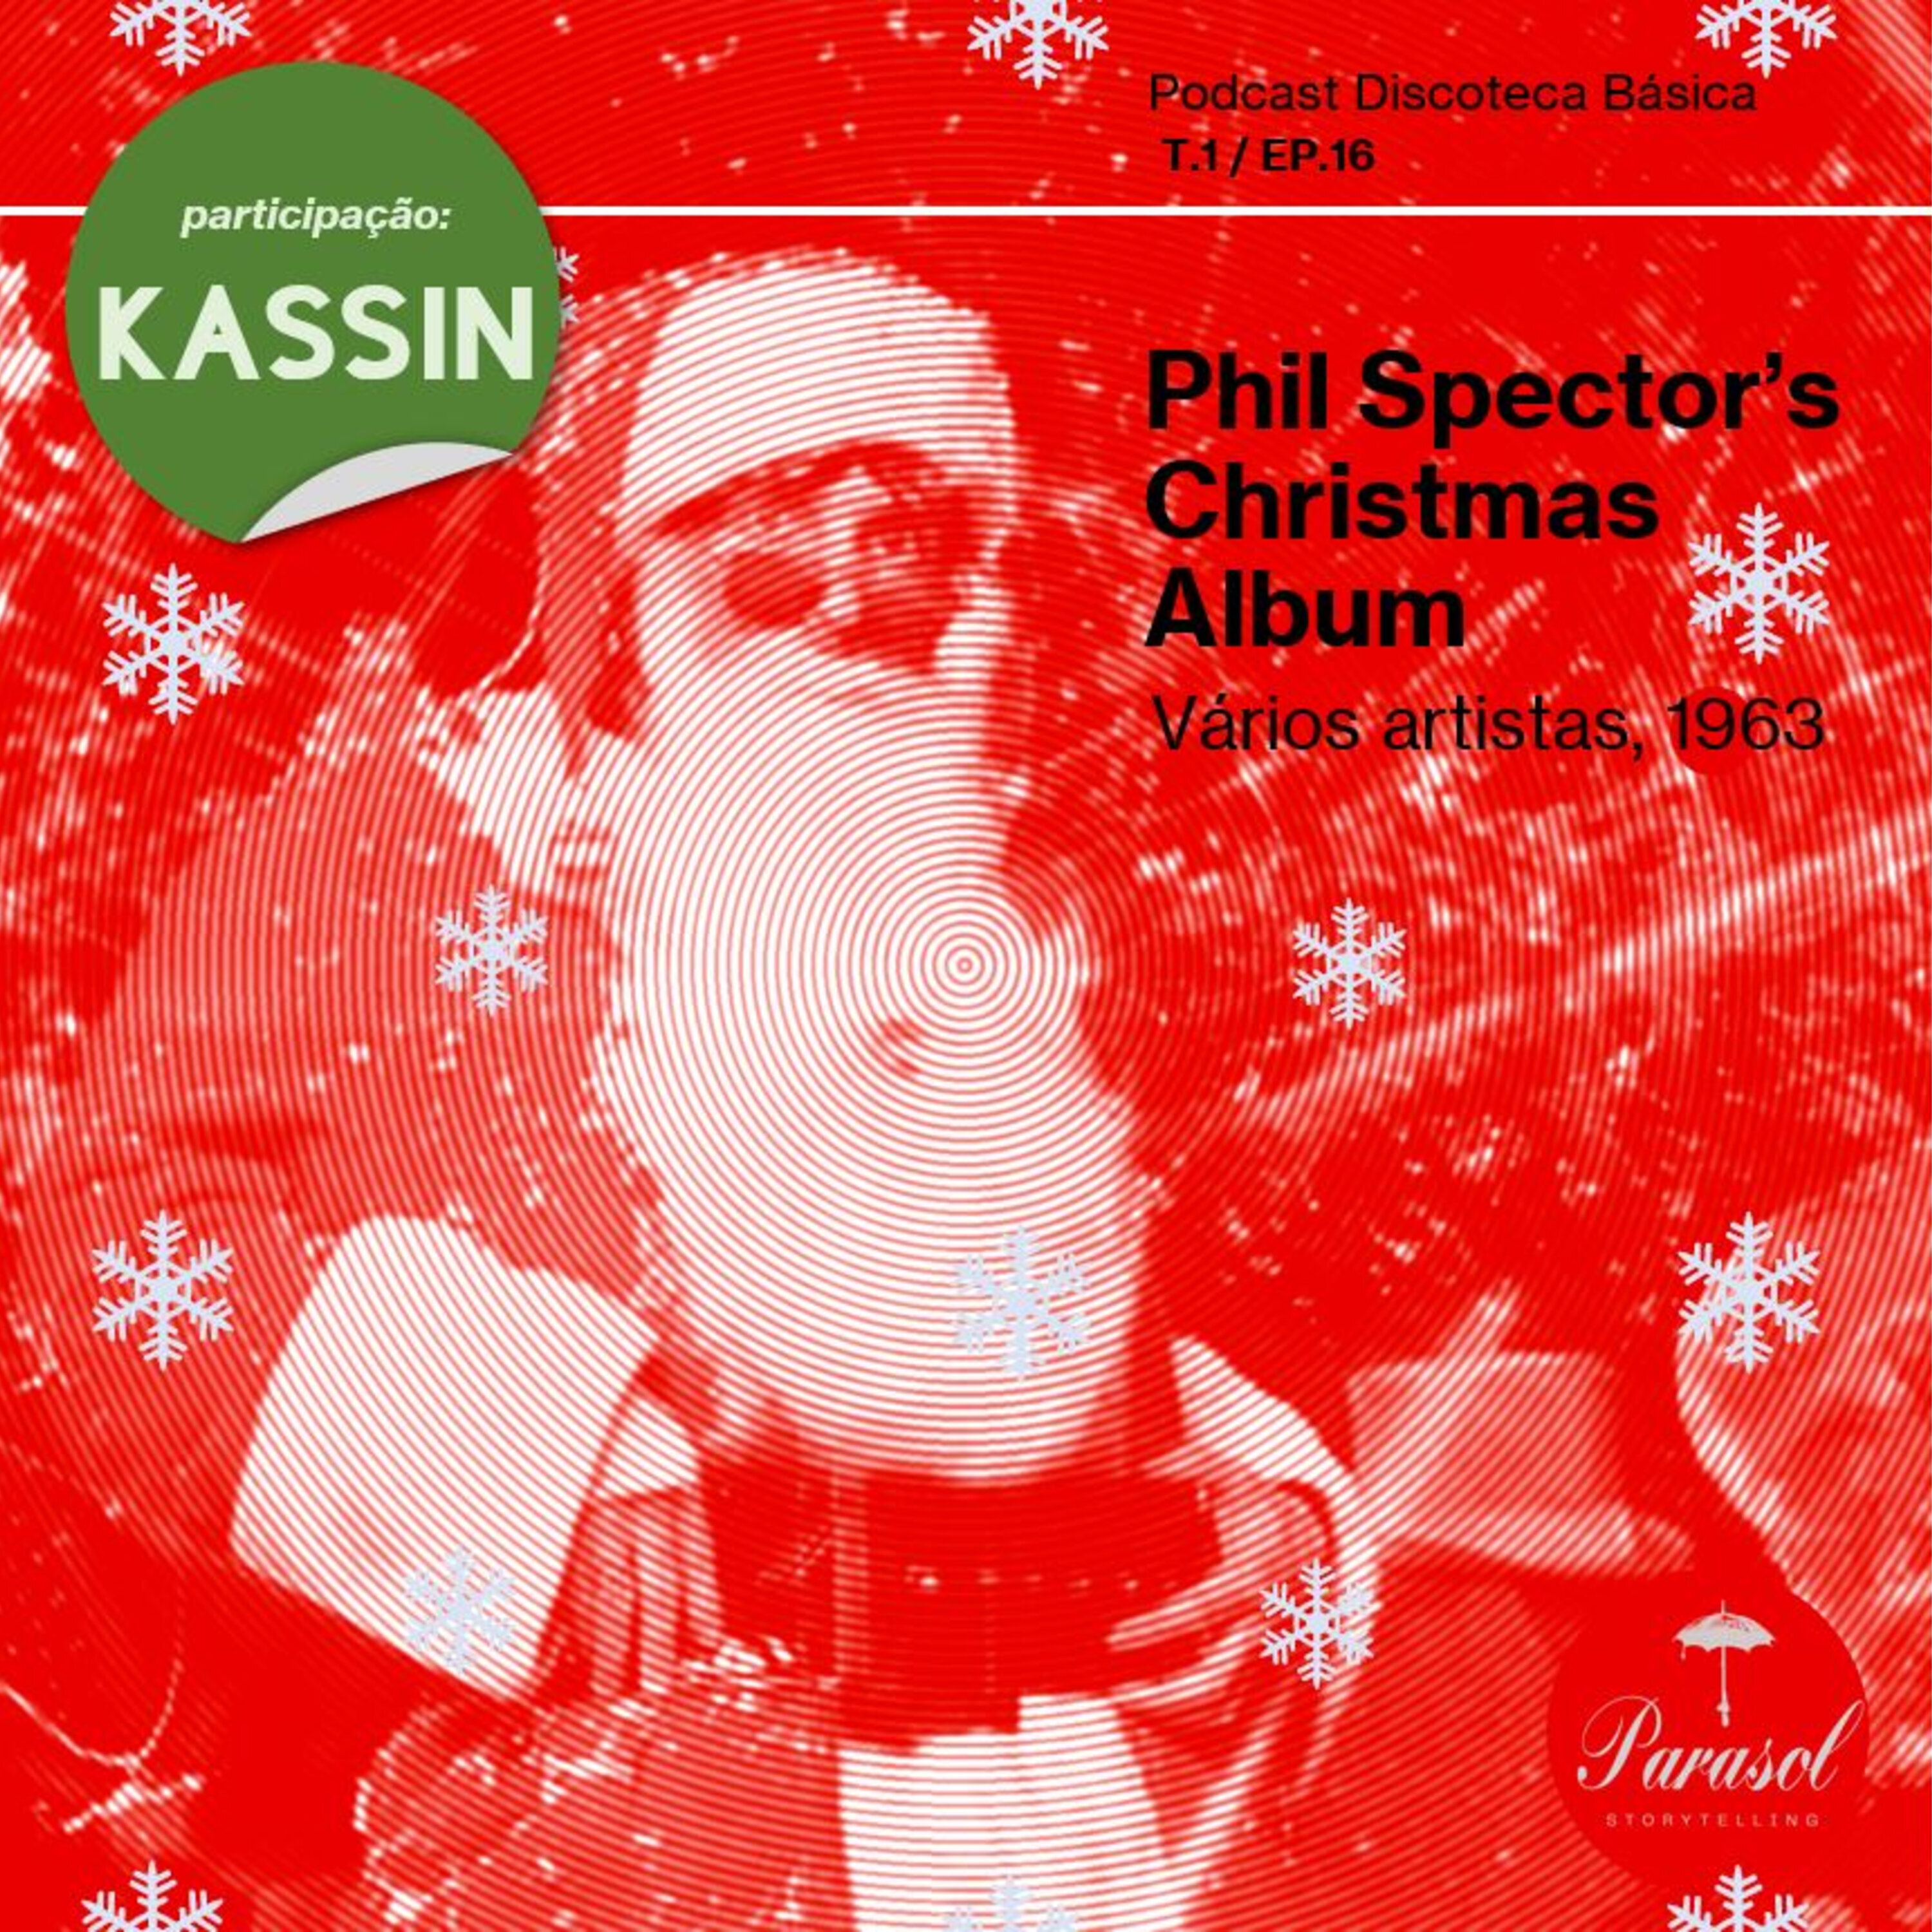 T01E16: Phil Spector’s Christmas Album - Vários artistas (1963)